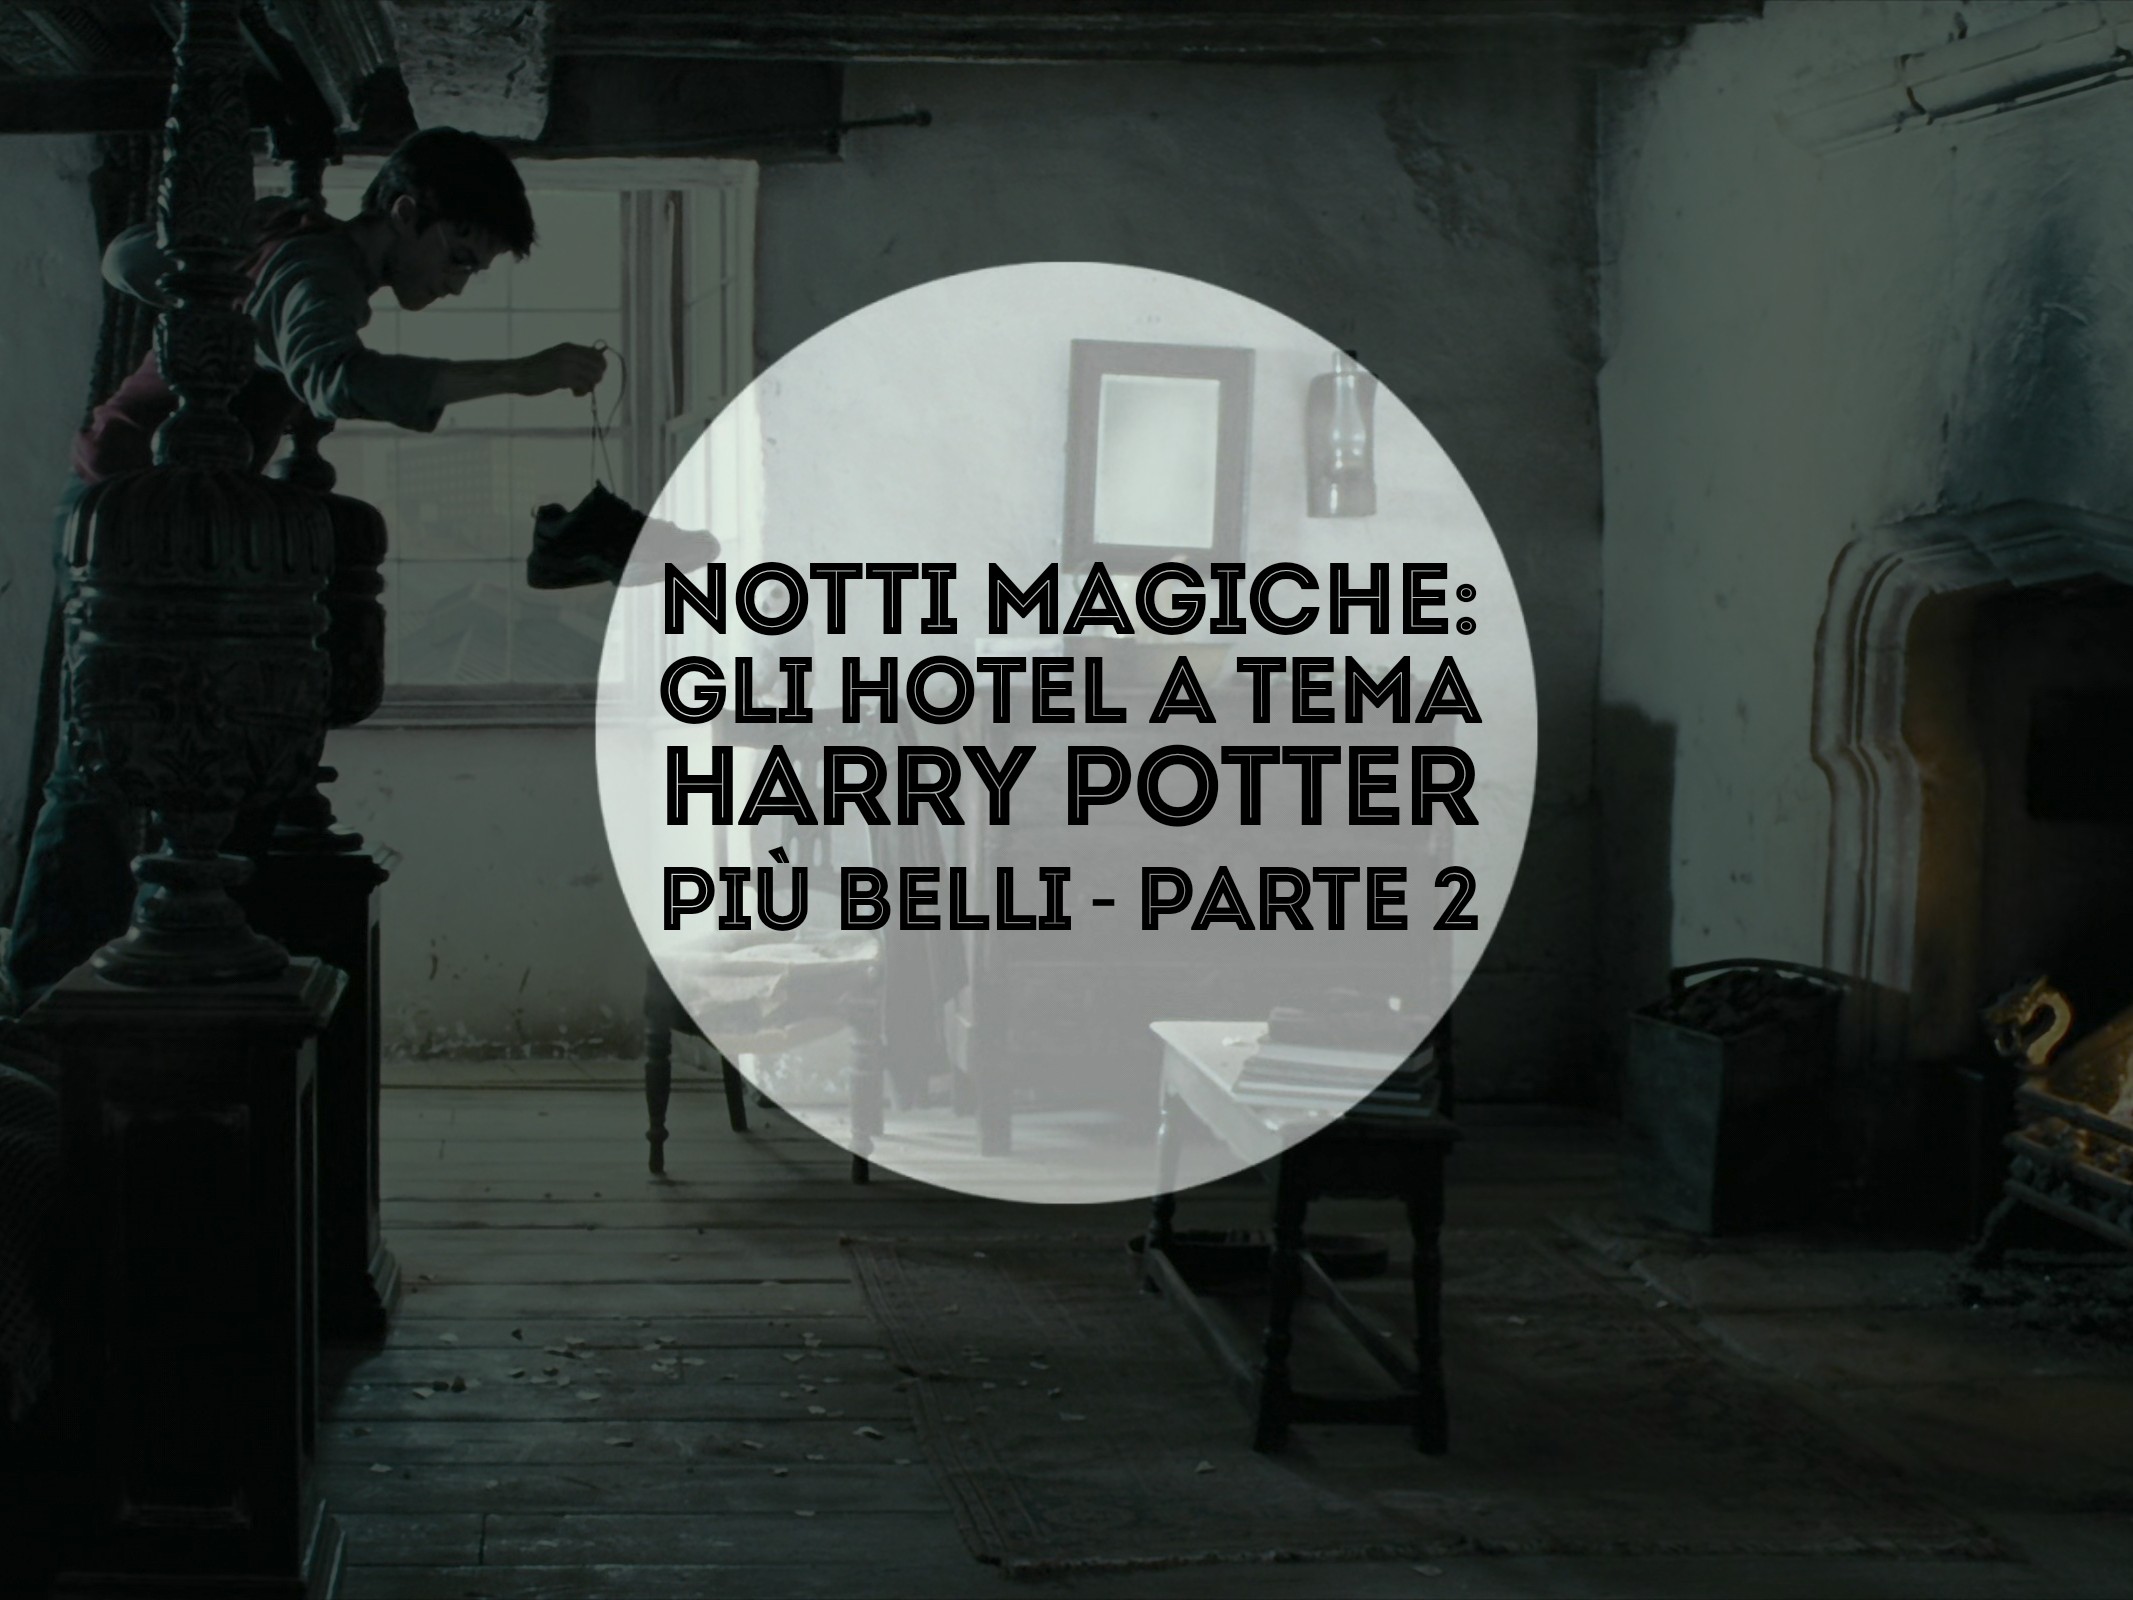 Notti magiche: gli hotel a tema Harry Potter più belli – parte 2